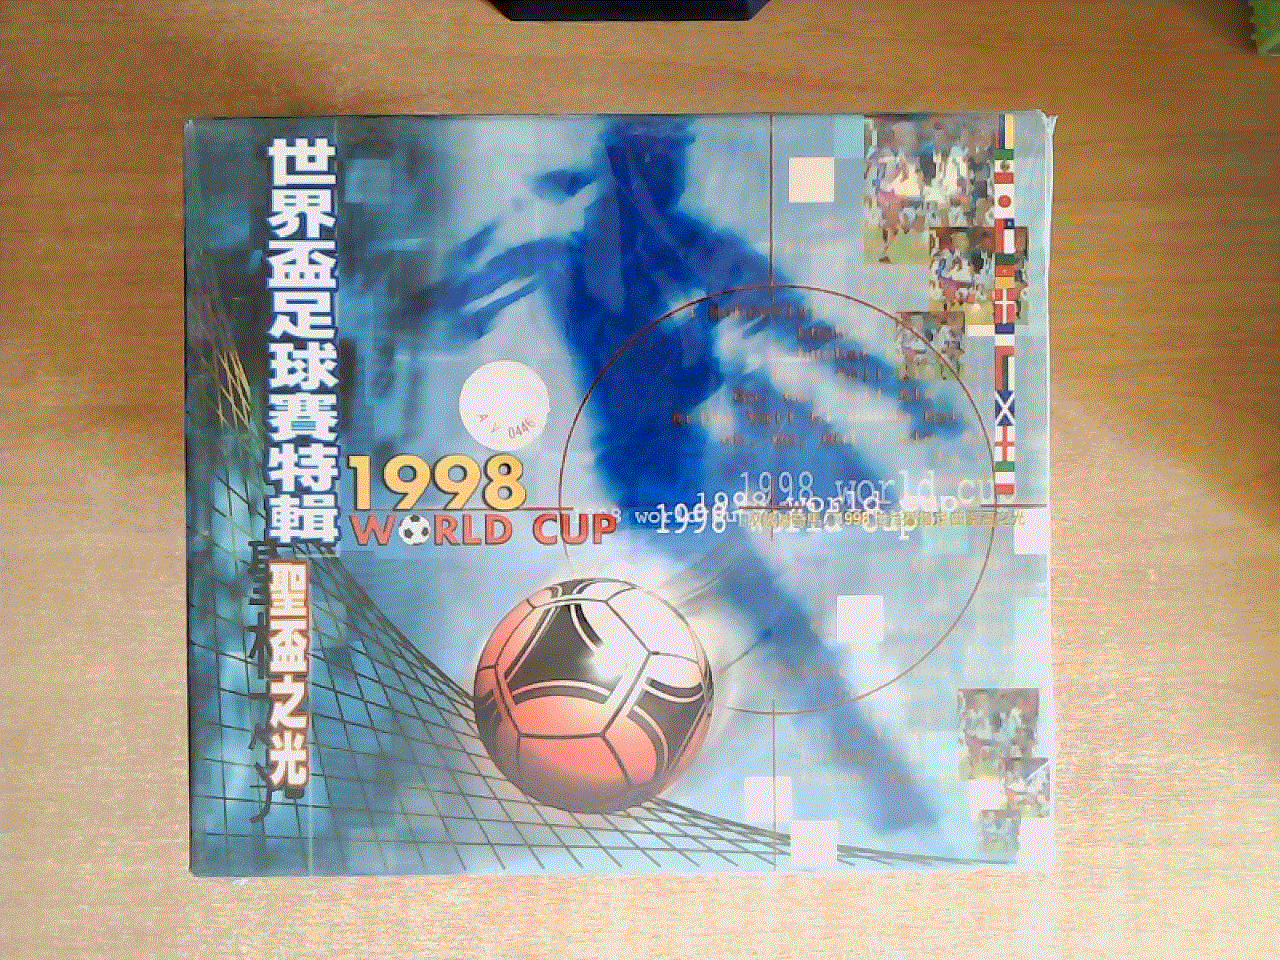 1998世界杯足球赛特辑 CD——   圣杯之光 CD    【世界杯歌曲专辑】 CD   全新没拆封